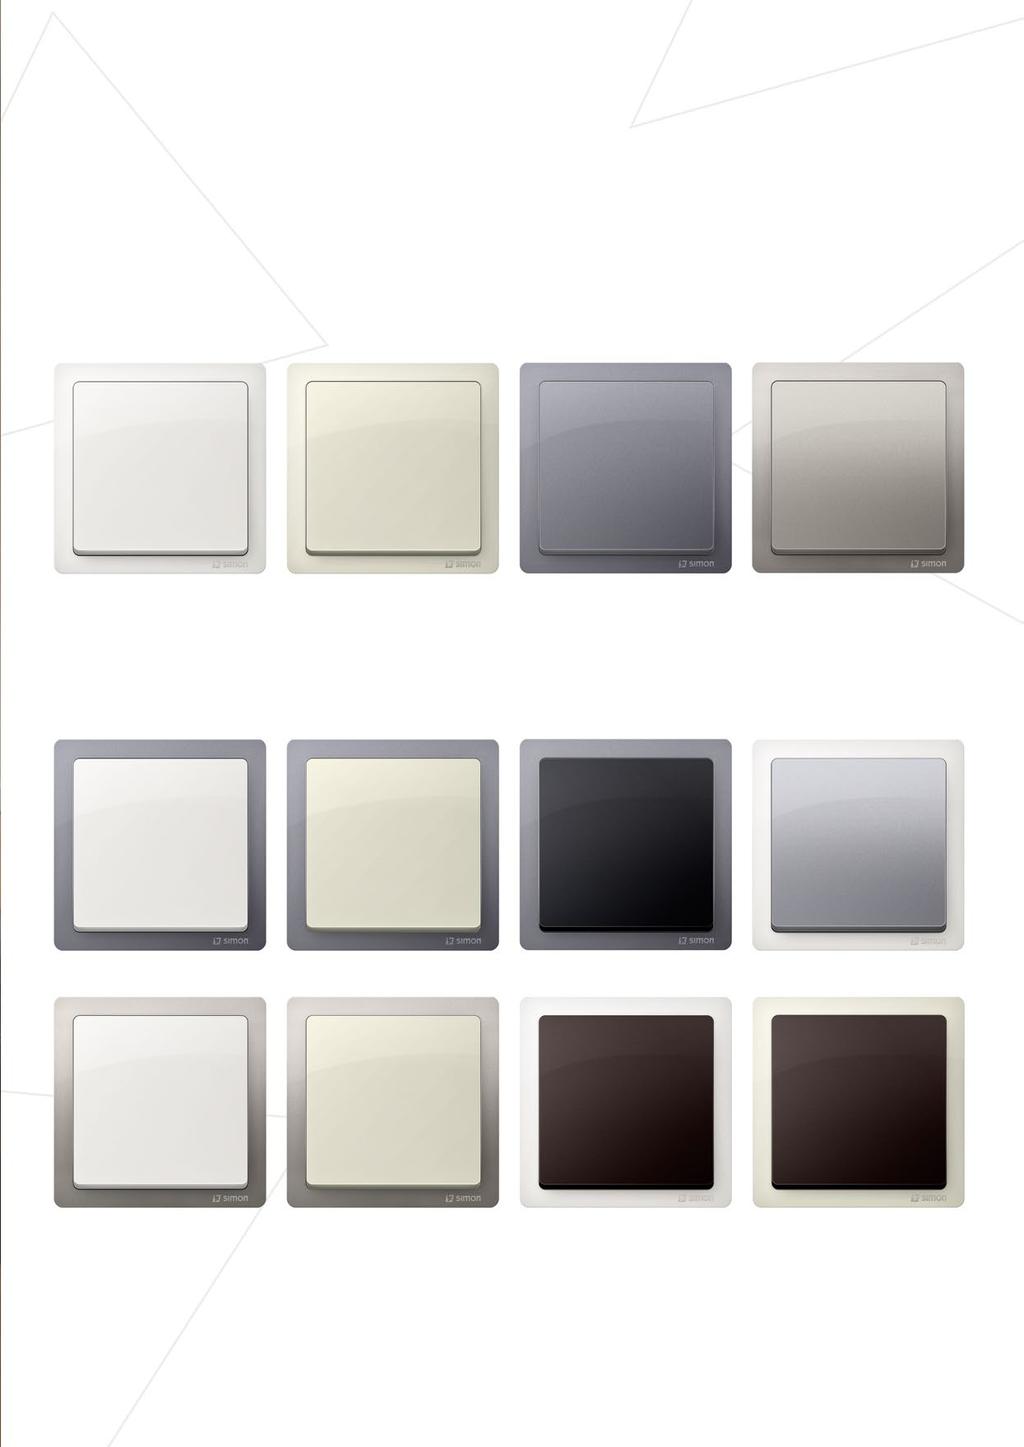 Máte na výběr 4 BARVY RÁMEČKŮ 7 BAREV MODULŮ Barva rámečku: bílá Barva modulu: bílá Barva rámečku: béžová Barva modulu: béžová Barva rámečku: ocel inox Barva modulu: ocel inox Barva rámečku: saténová